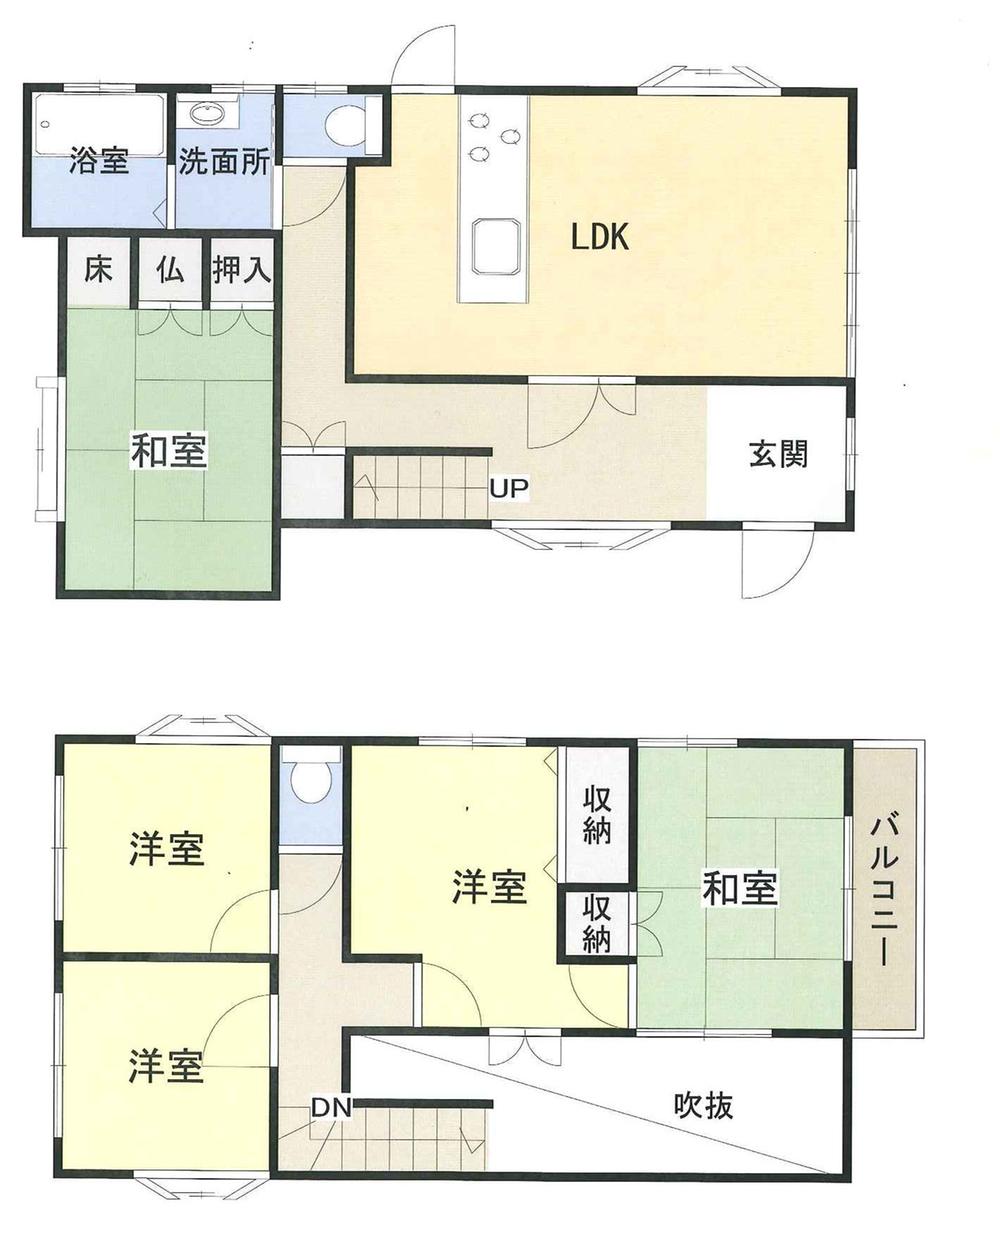 Floor plan. 14.6 million yen, 5LDK, Land area 195 sq m , Building area 124 sq m